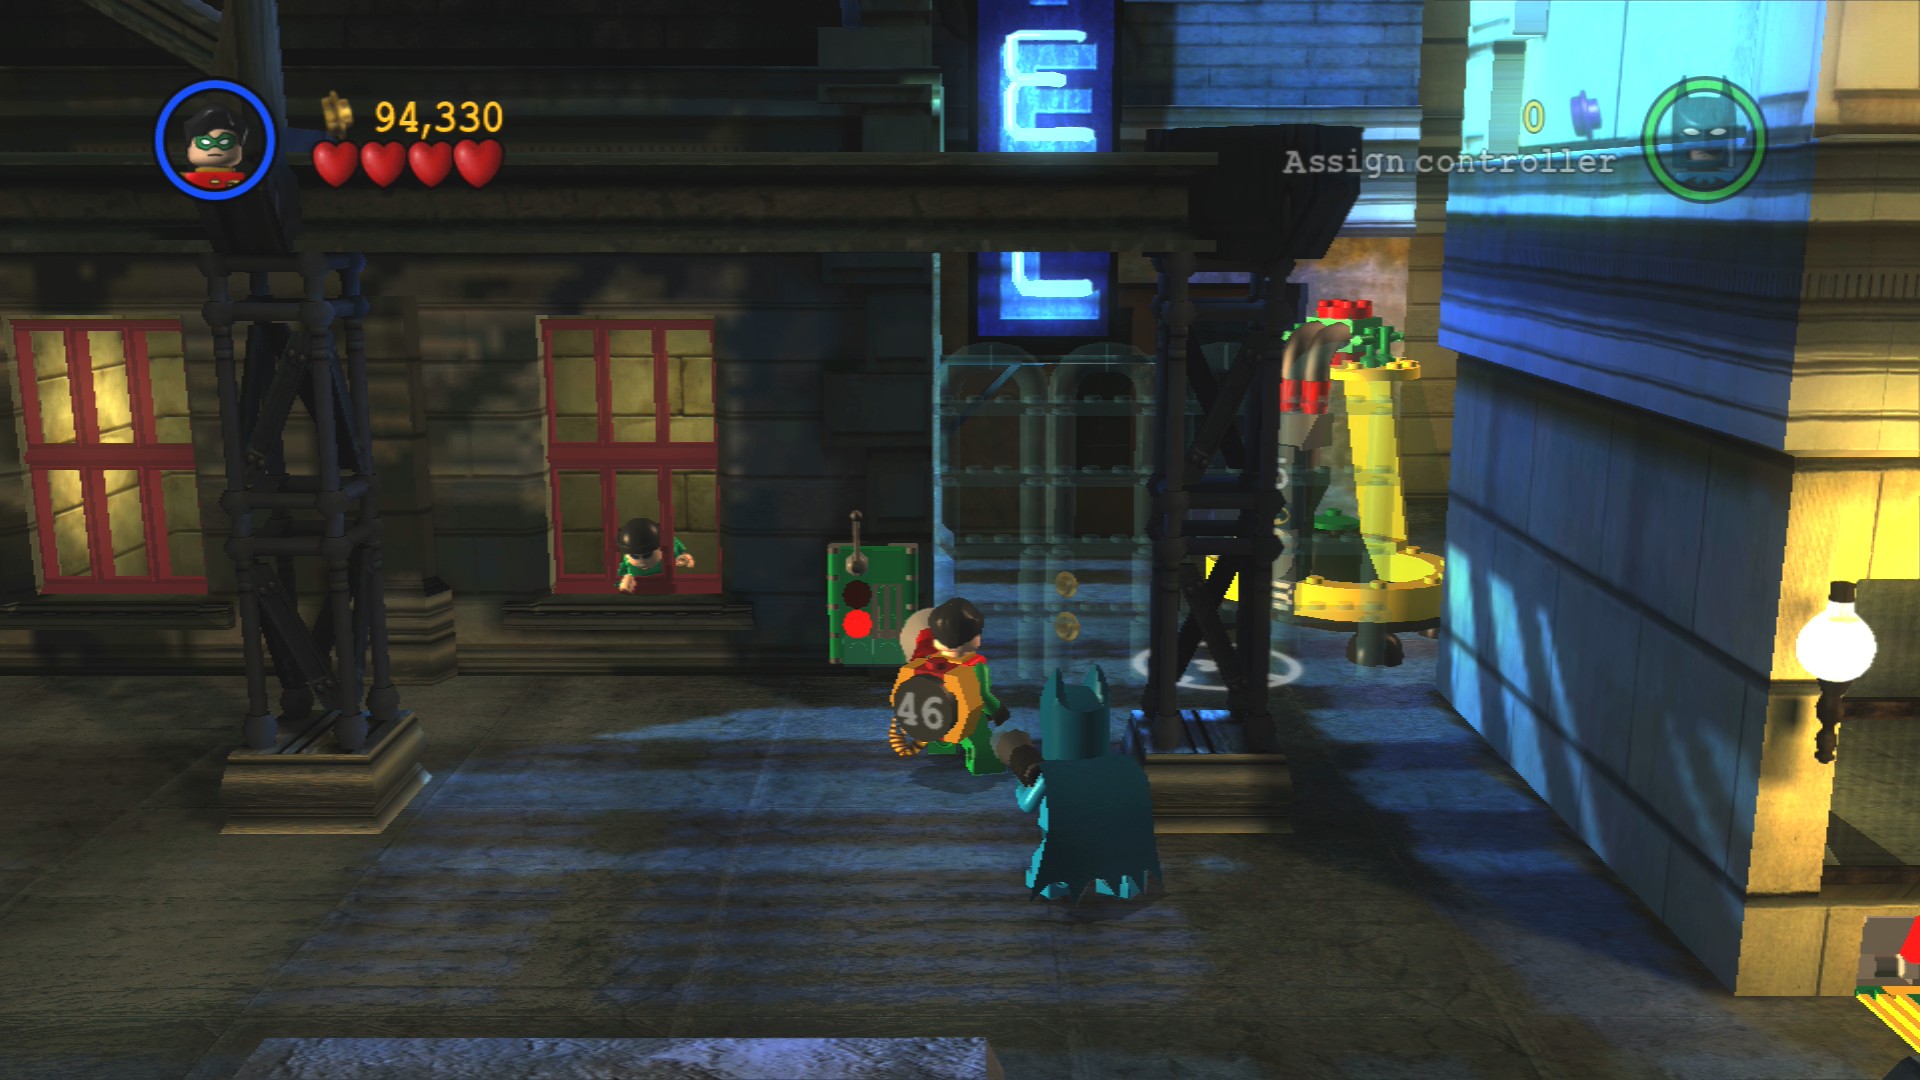 darkBricks - LEGO Batman - The Videogame - Walkthrough - The Riddler's  Revenge